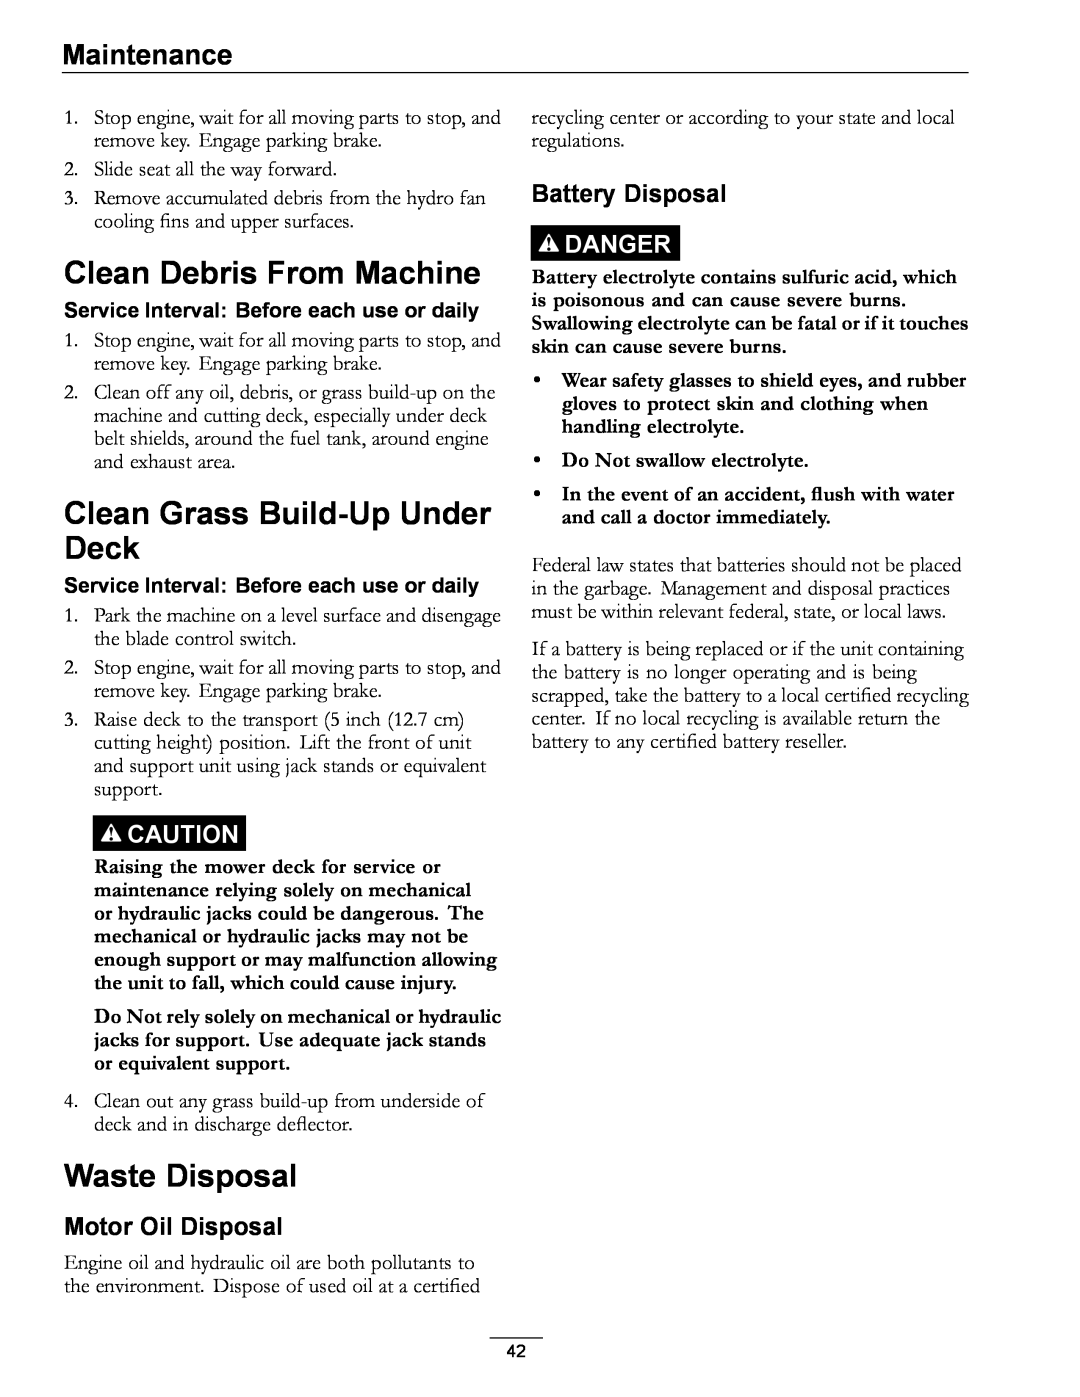 Exmark 920 Clean Debris From Machine, Clean Grass Build-Up Under Deck, Waste Disposal, Motor Oil Disposal, Maintenance 